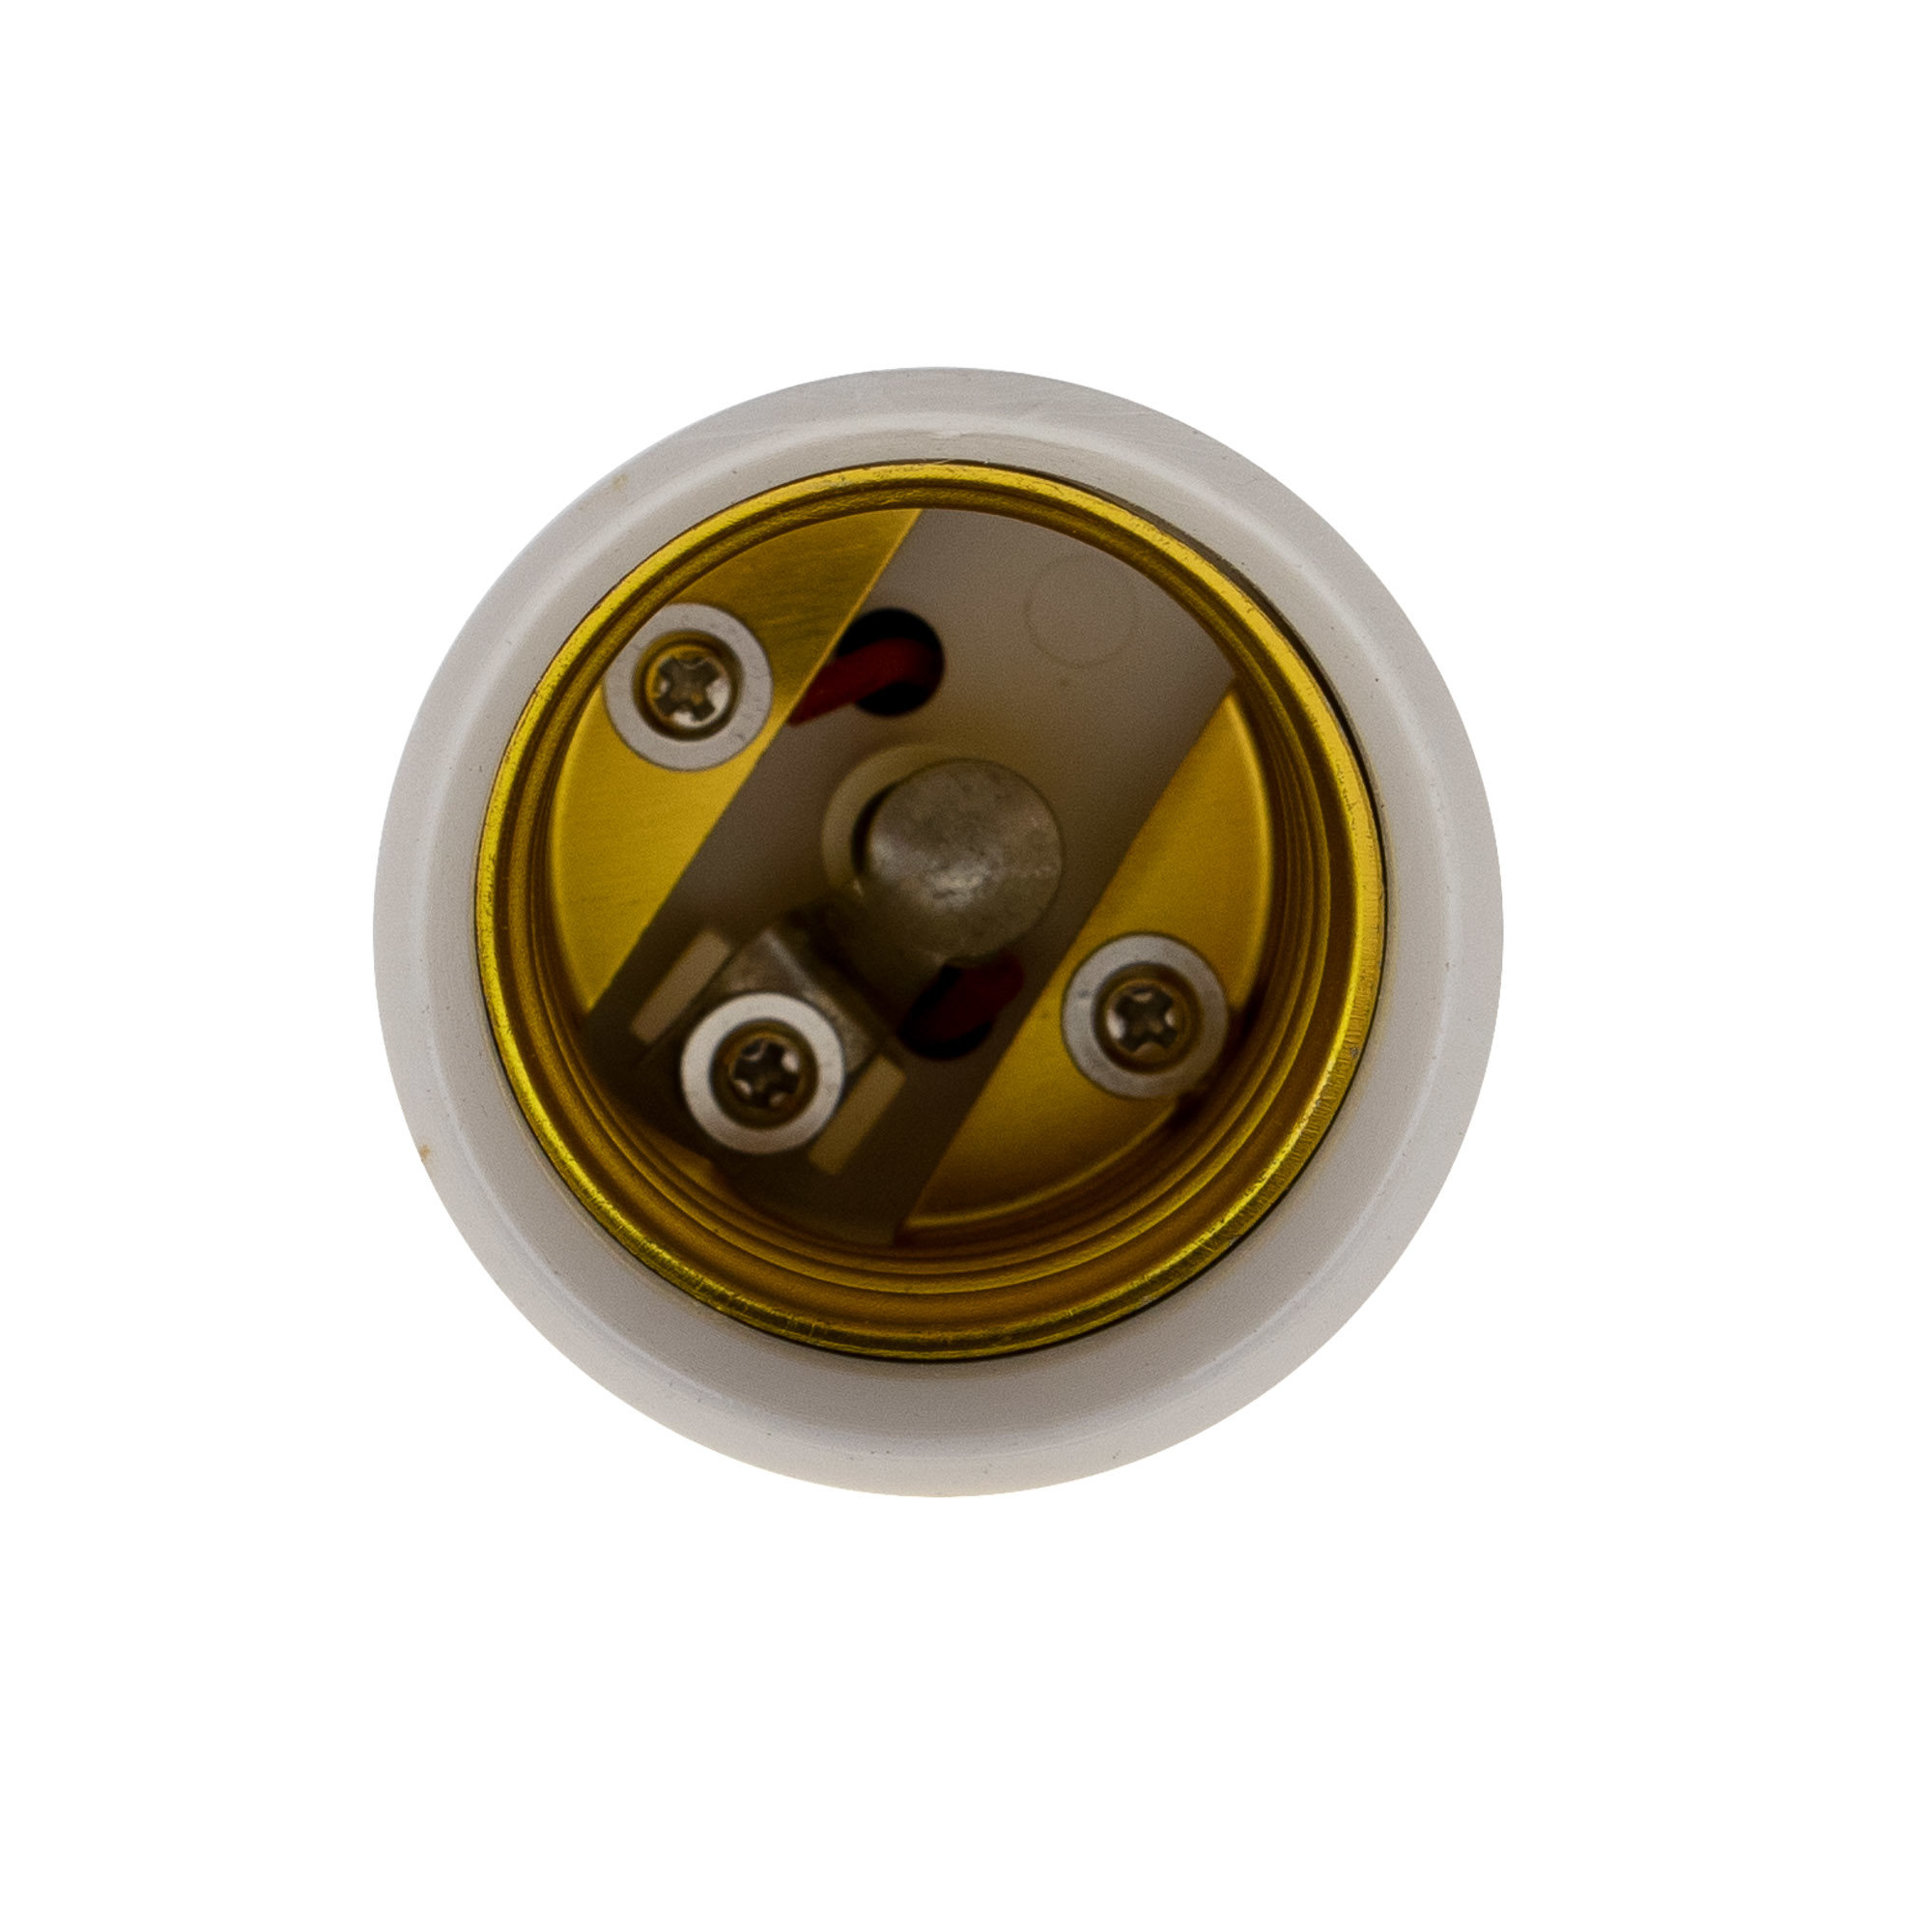 Lamp socket adaptor GU10 to E27 - 4PCS